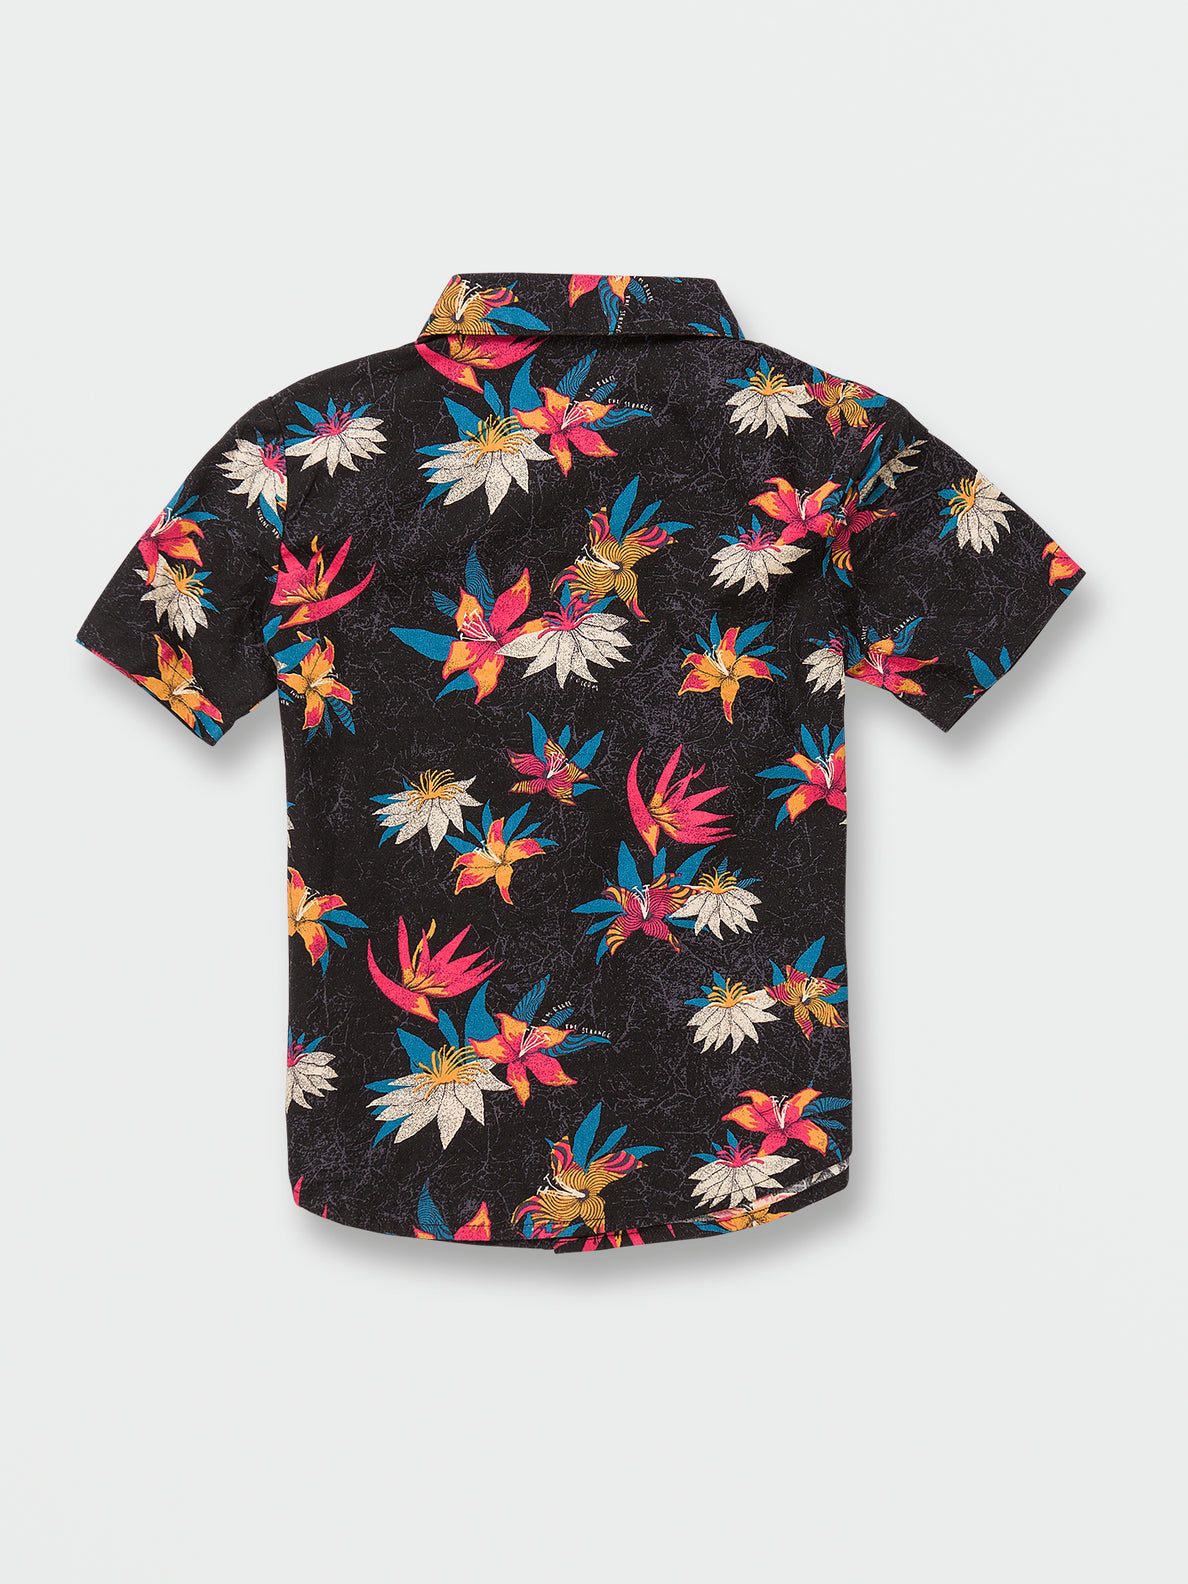 Little Boys Warbler Short Sleeve Shirt - Black Floral Print 3